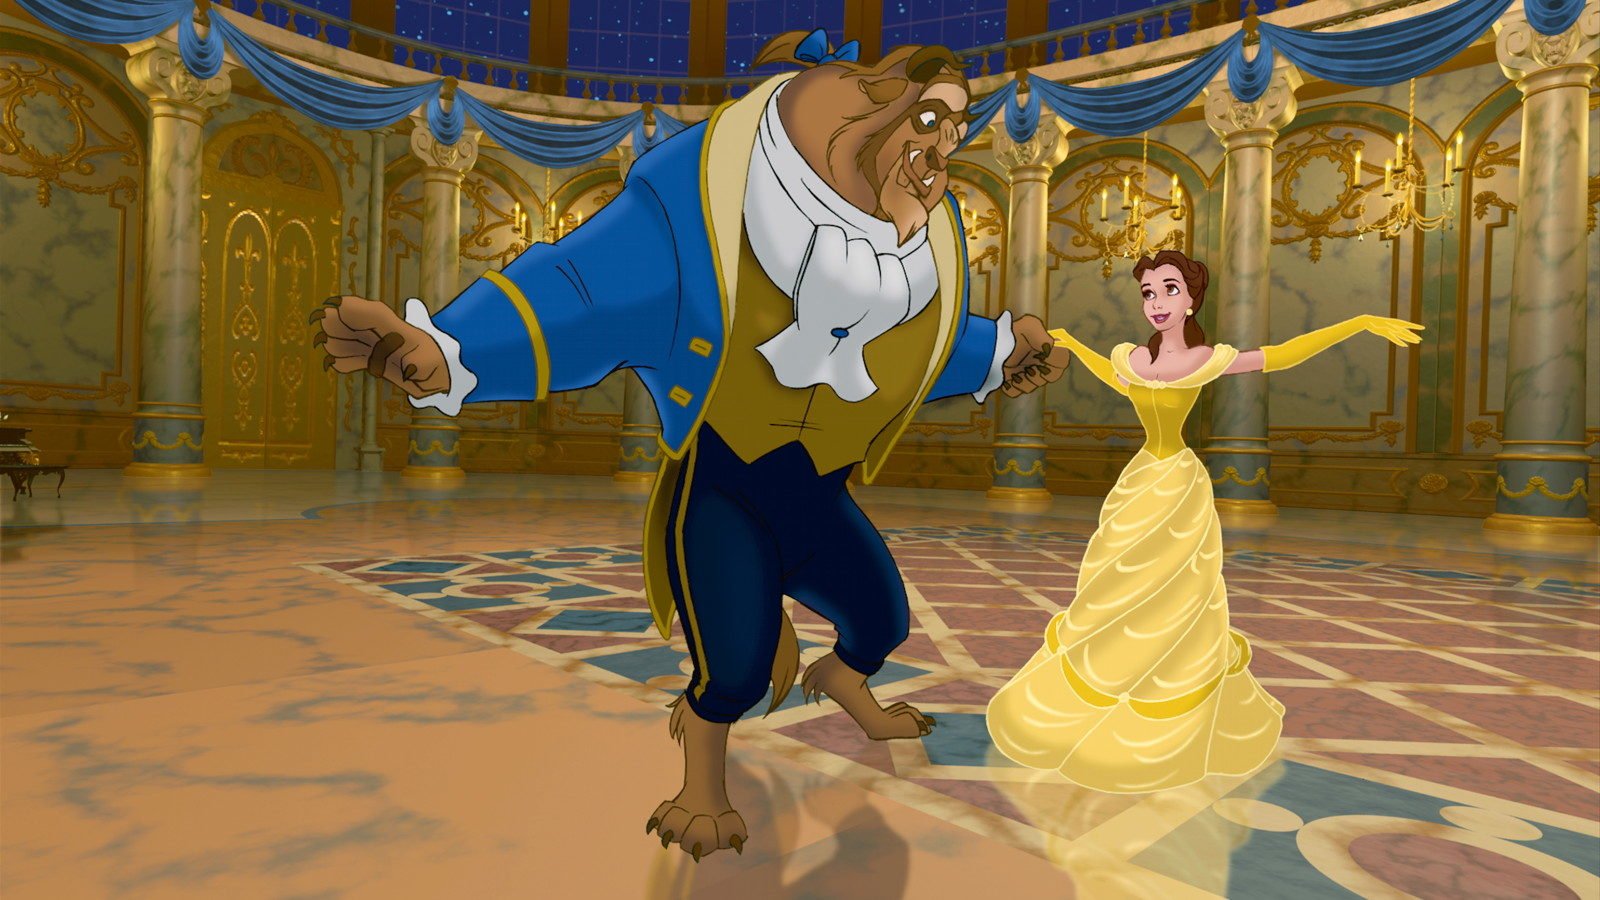 La Bella e la Bestia : 25 curiosità che vi lasceranno a bocca aperta -  Curiosità Disney